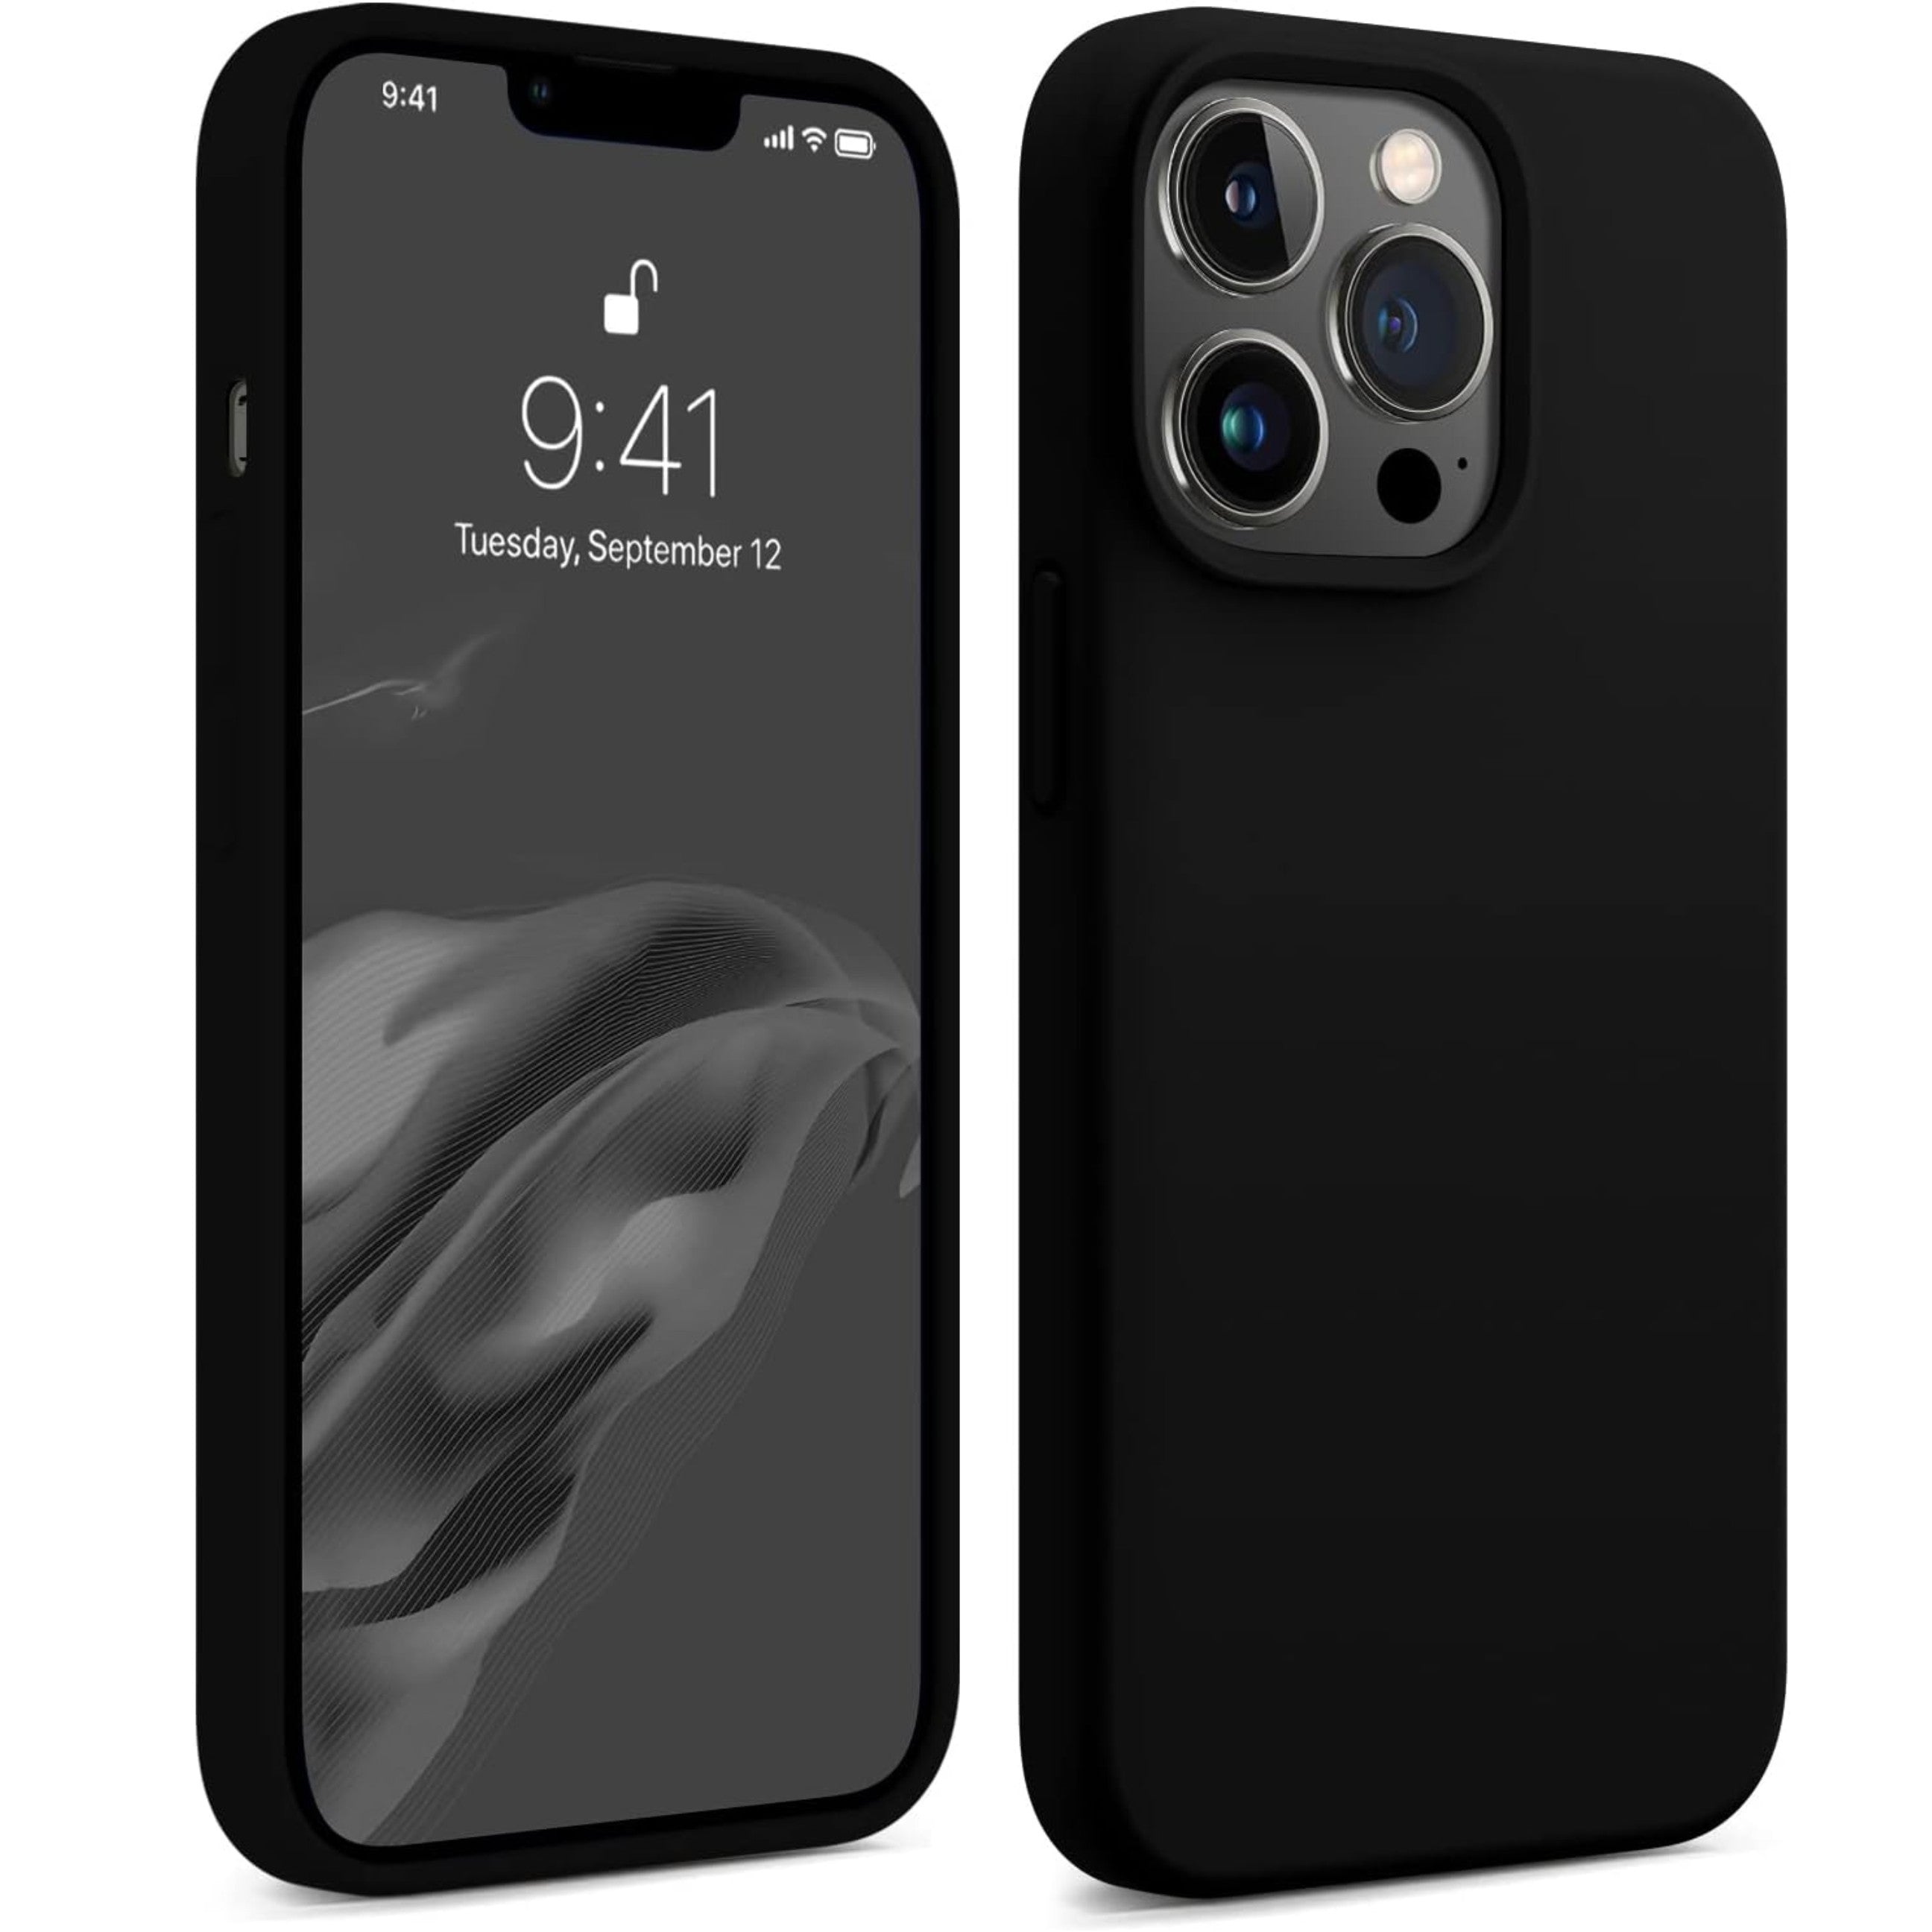 Black Silicone iPhone Case